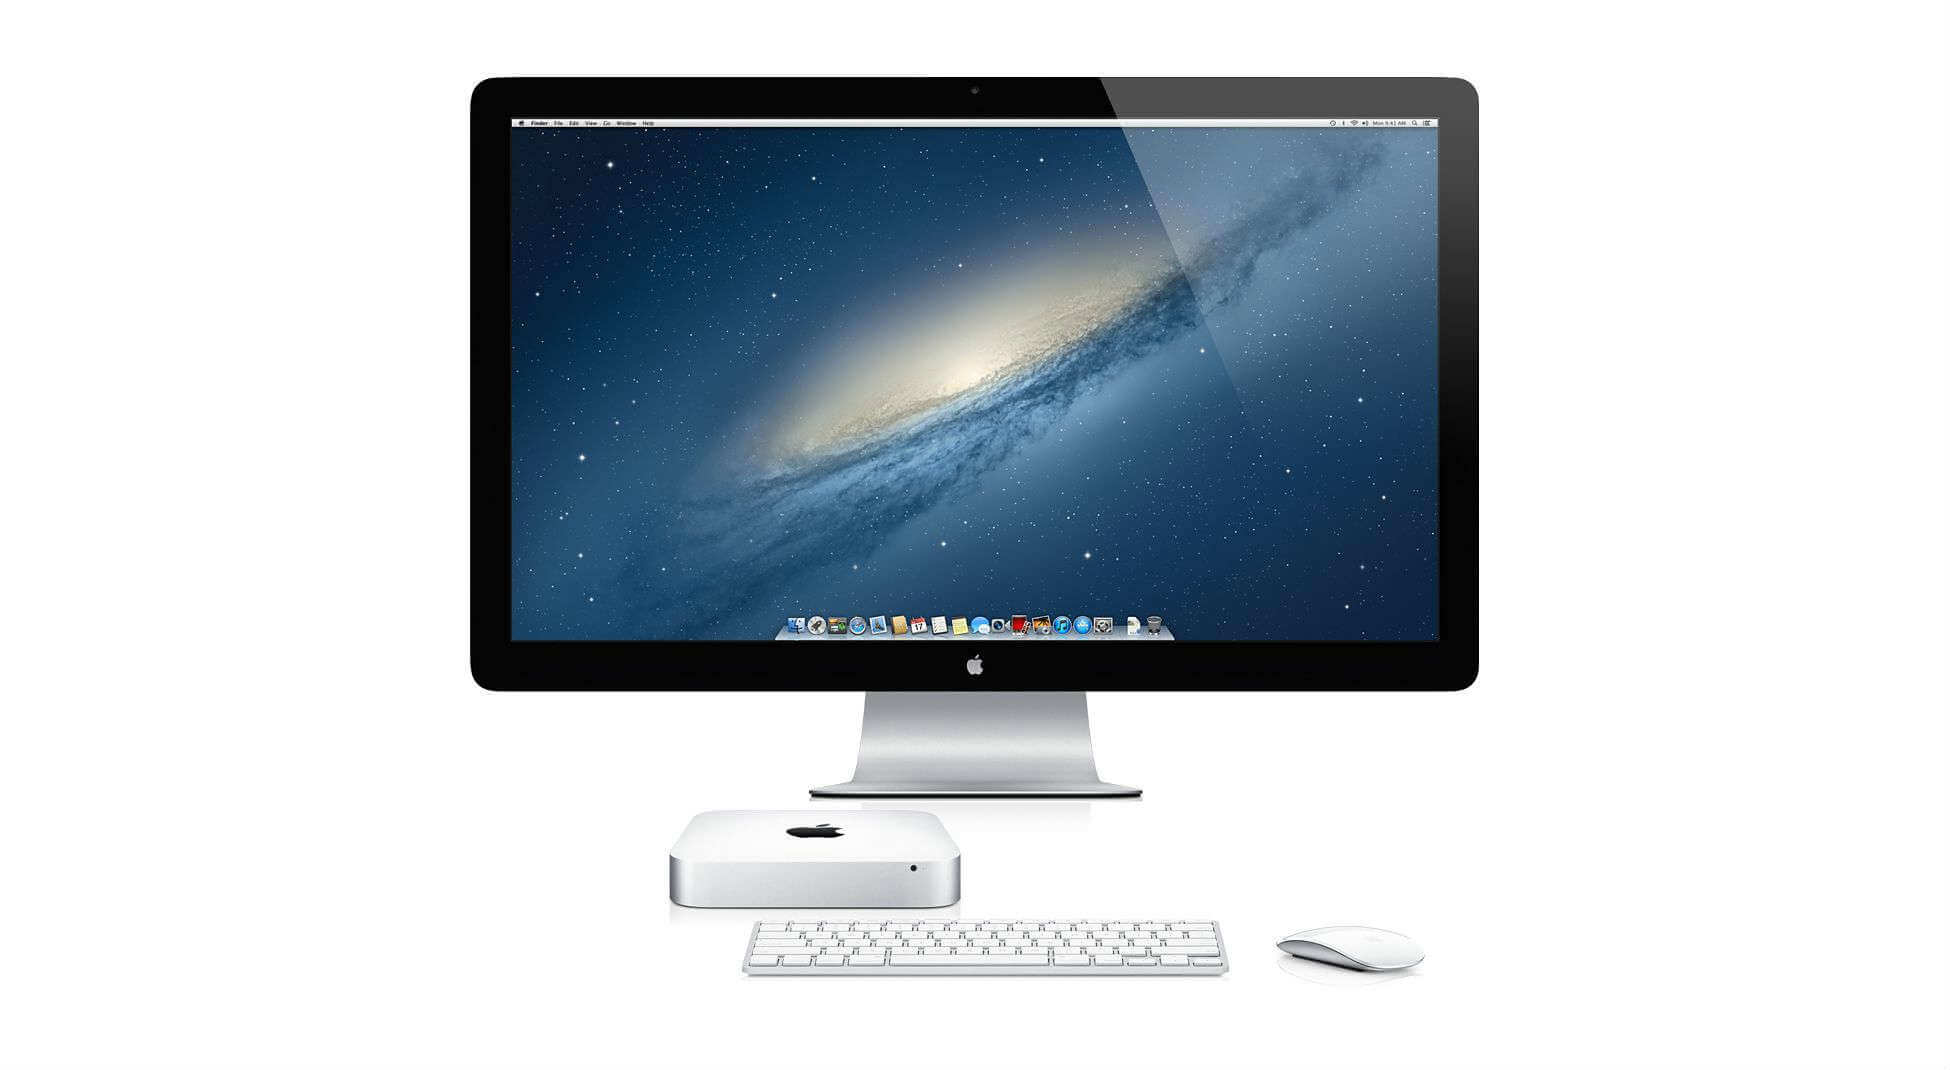 Comprar un Mac, ¿nuevo o de segunda mano?